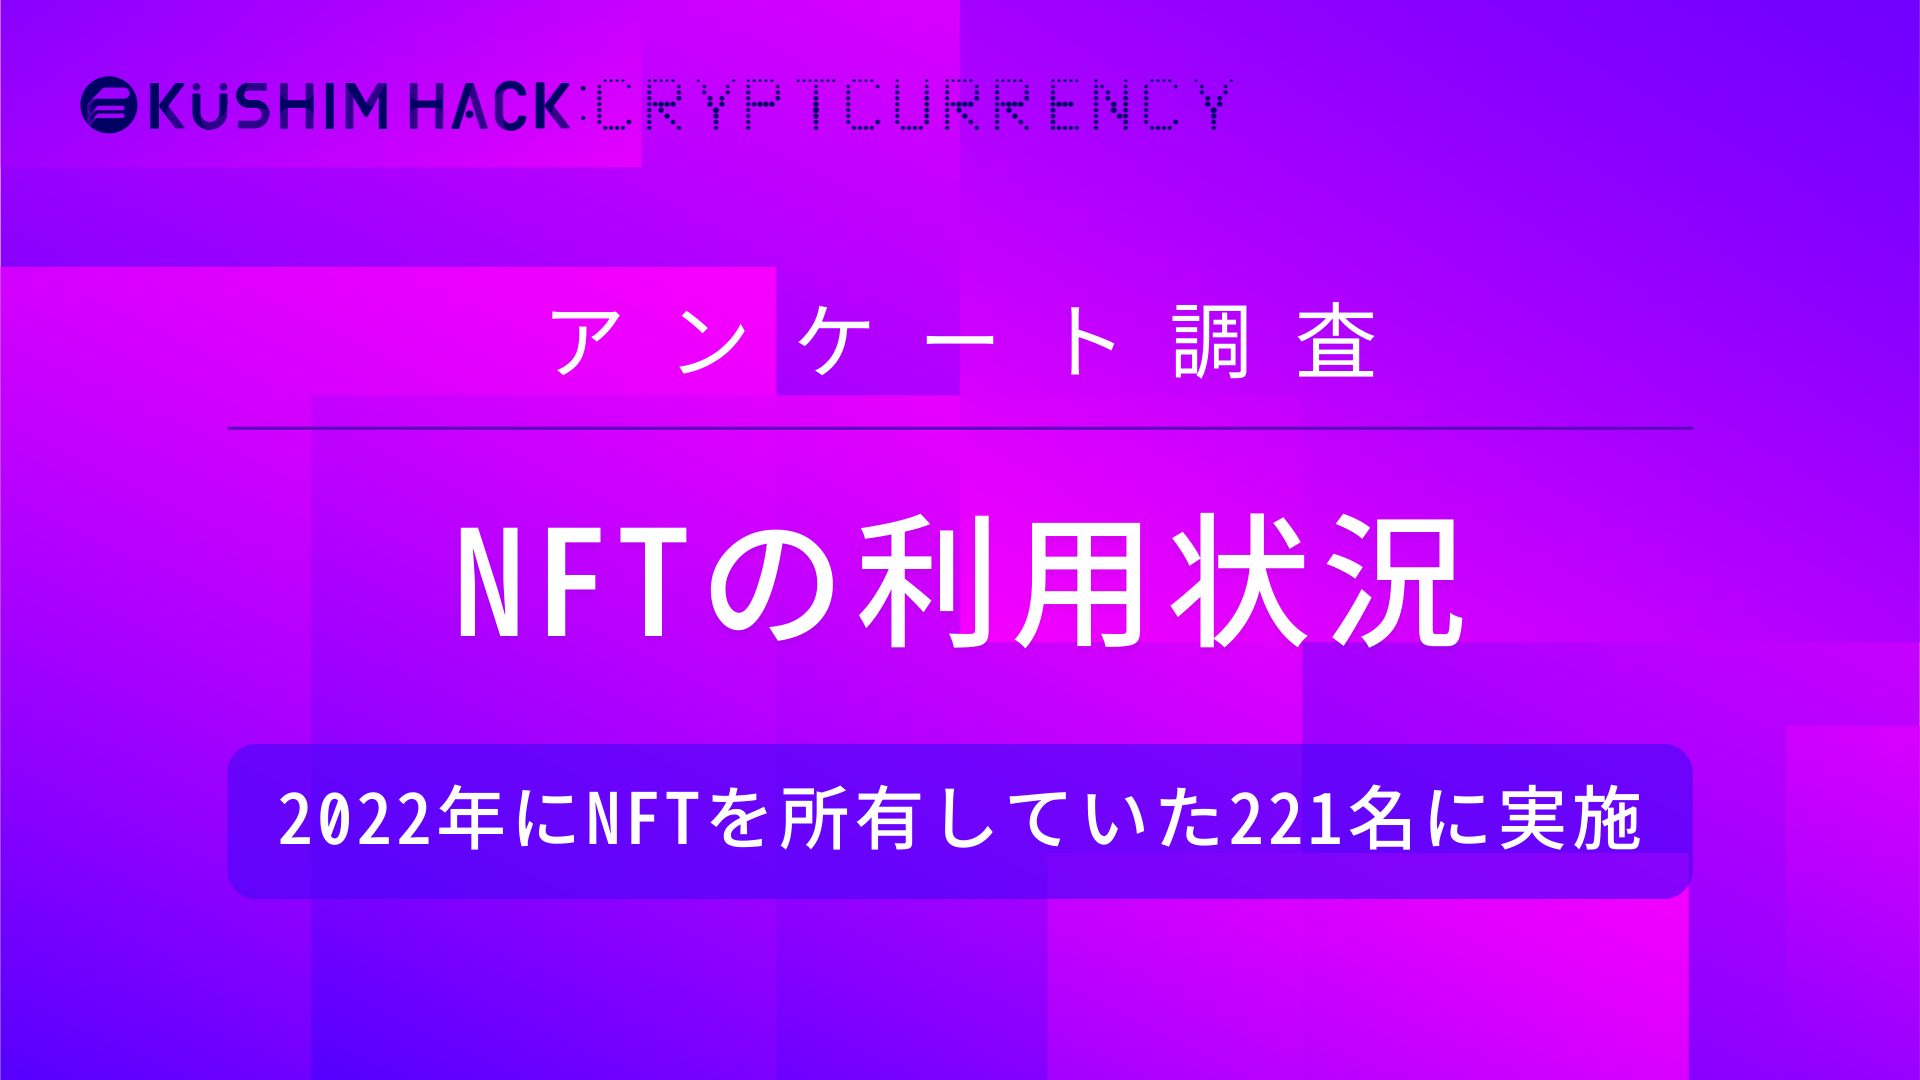 NFTを所有している221名にNFTの利用状況に関するアンケート調査を実施